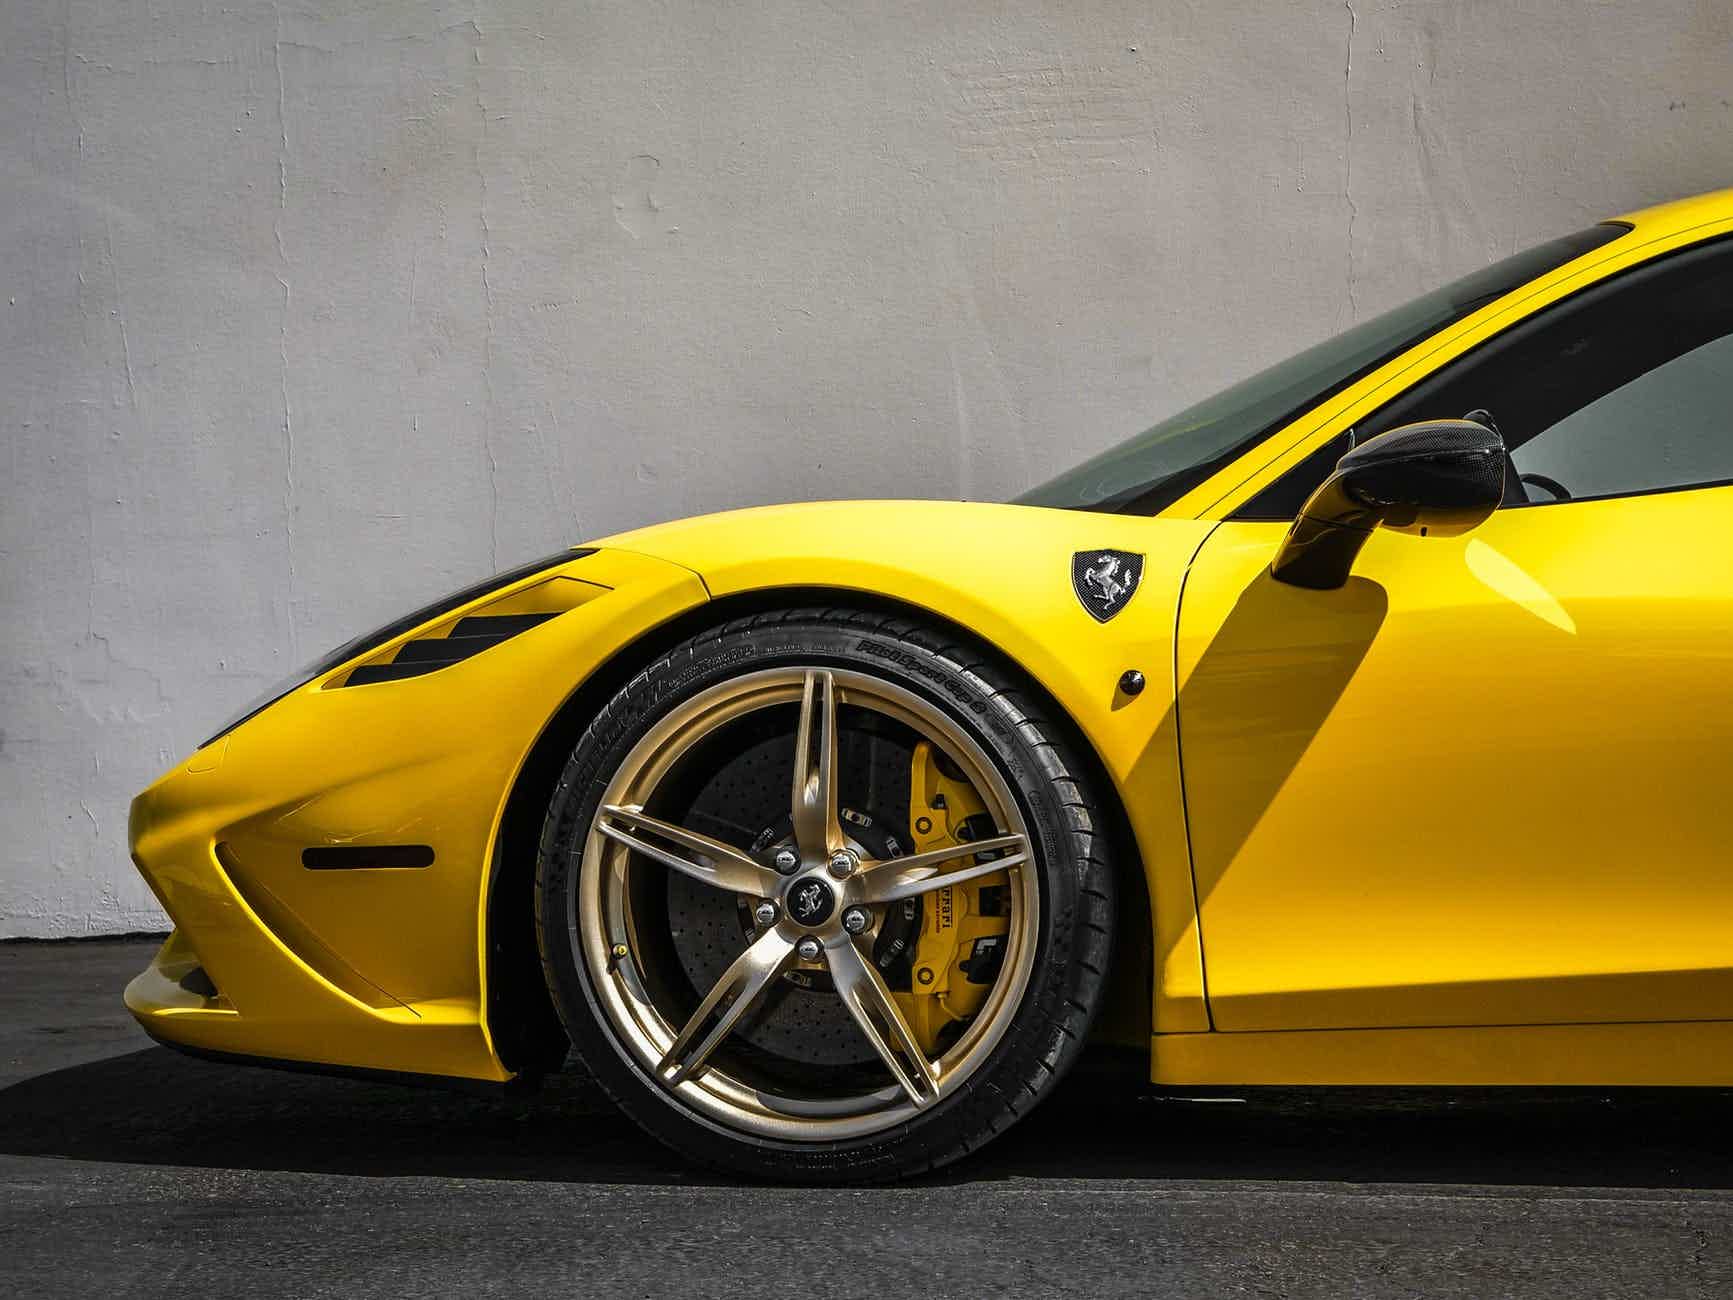 Ferrari não poderia ficar de fora da lista de carros raros. Fonte: Pexels.